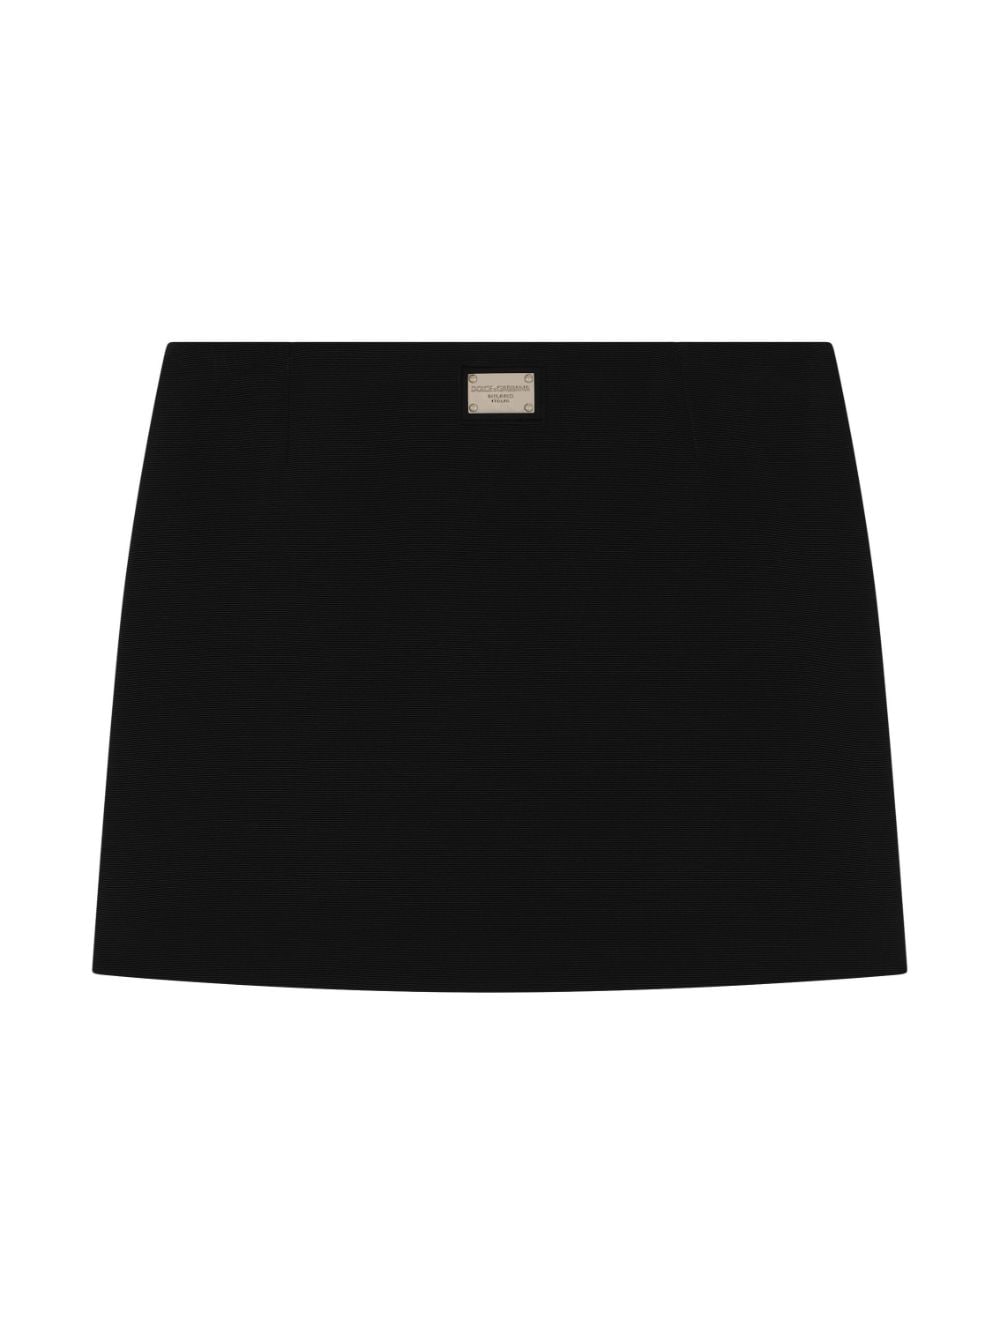 Black skirt for girls with logo